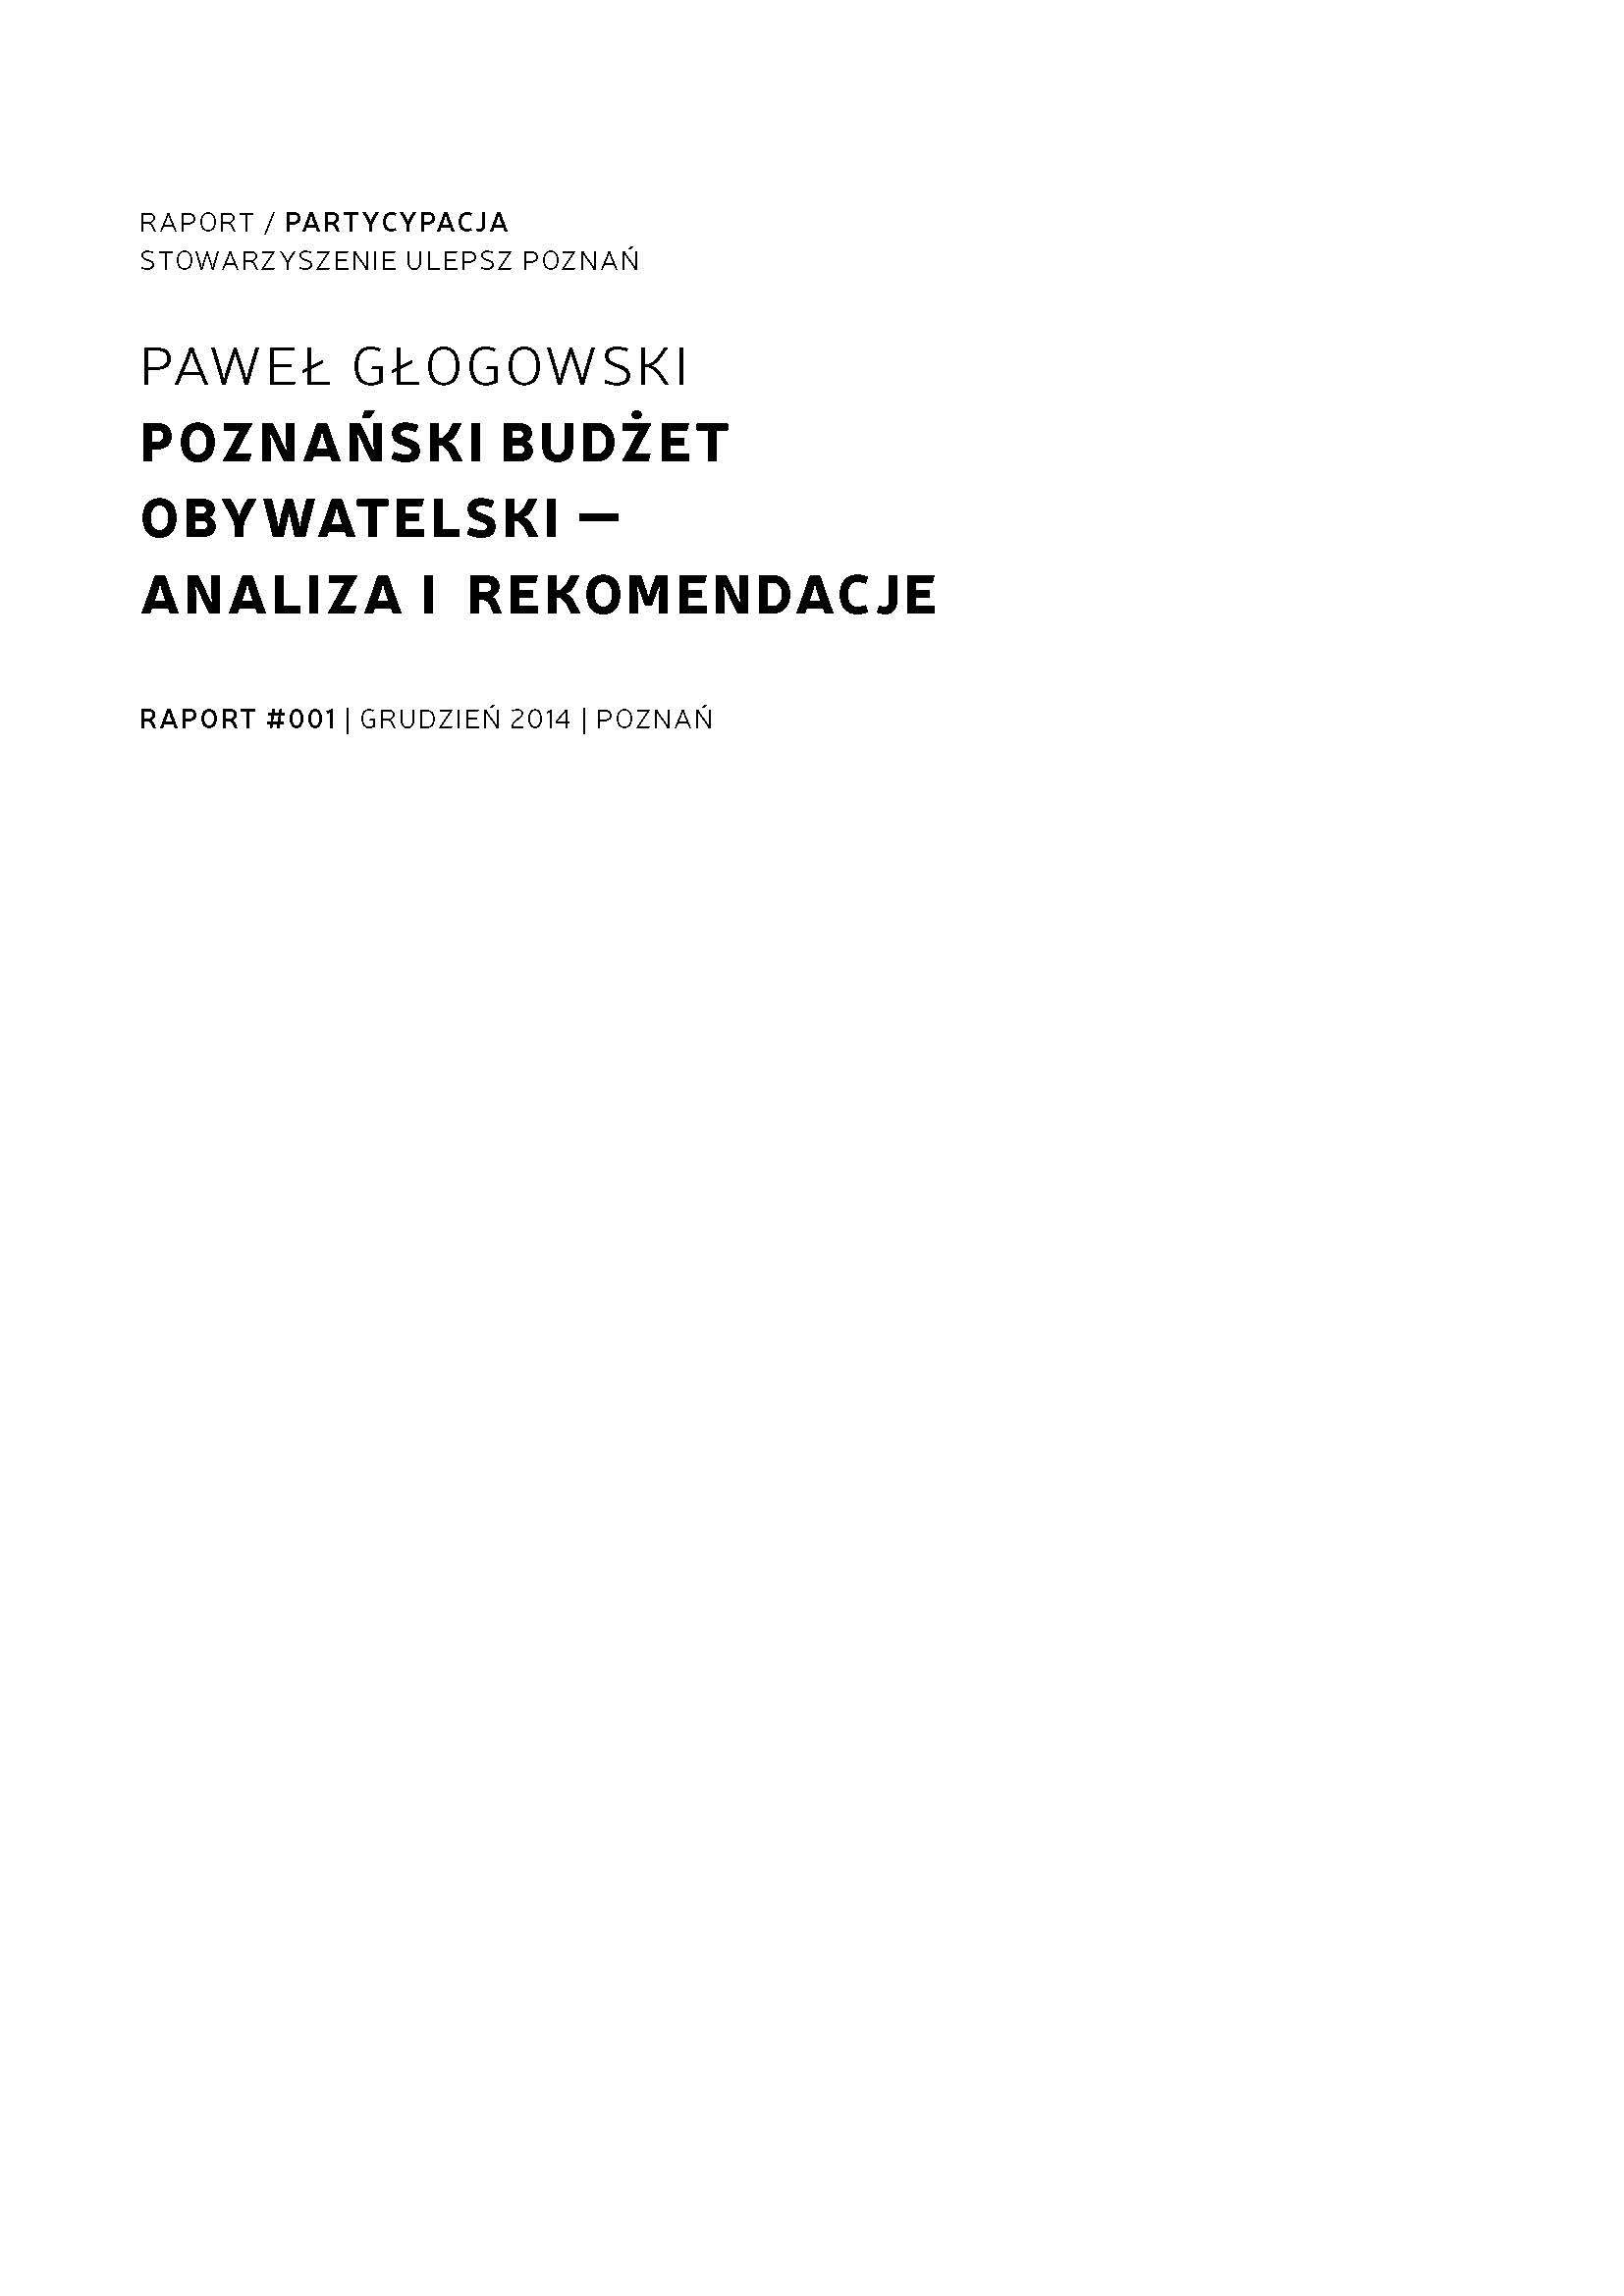 Poznański Budżet Obywatelski – Analiza i rekomendacje